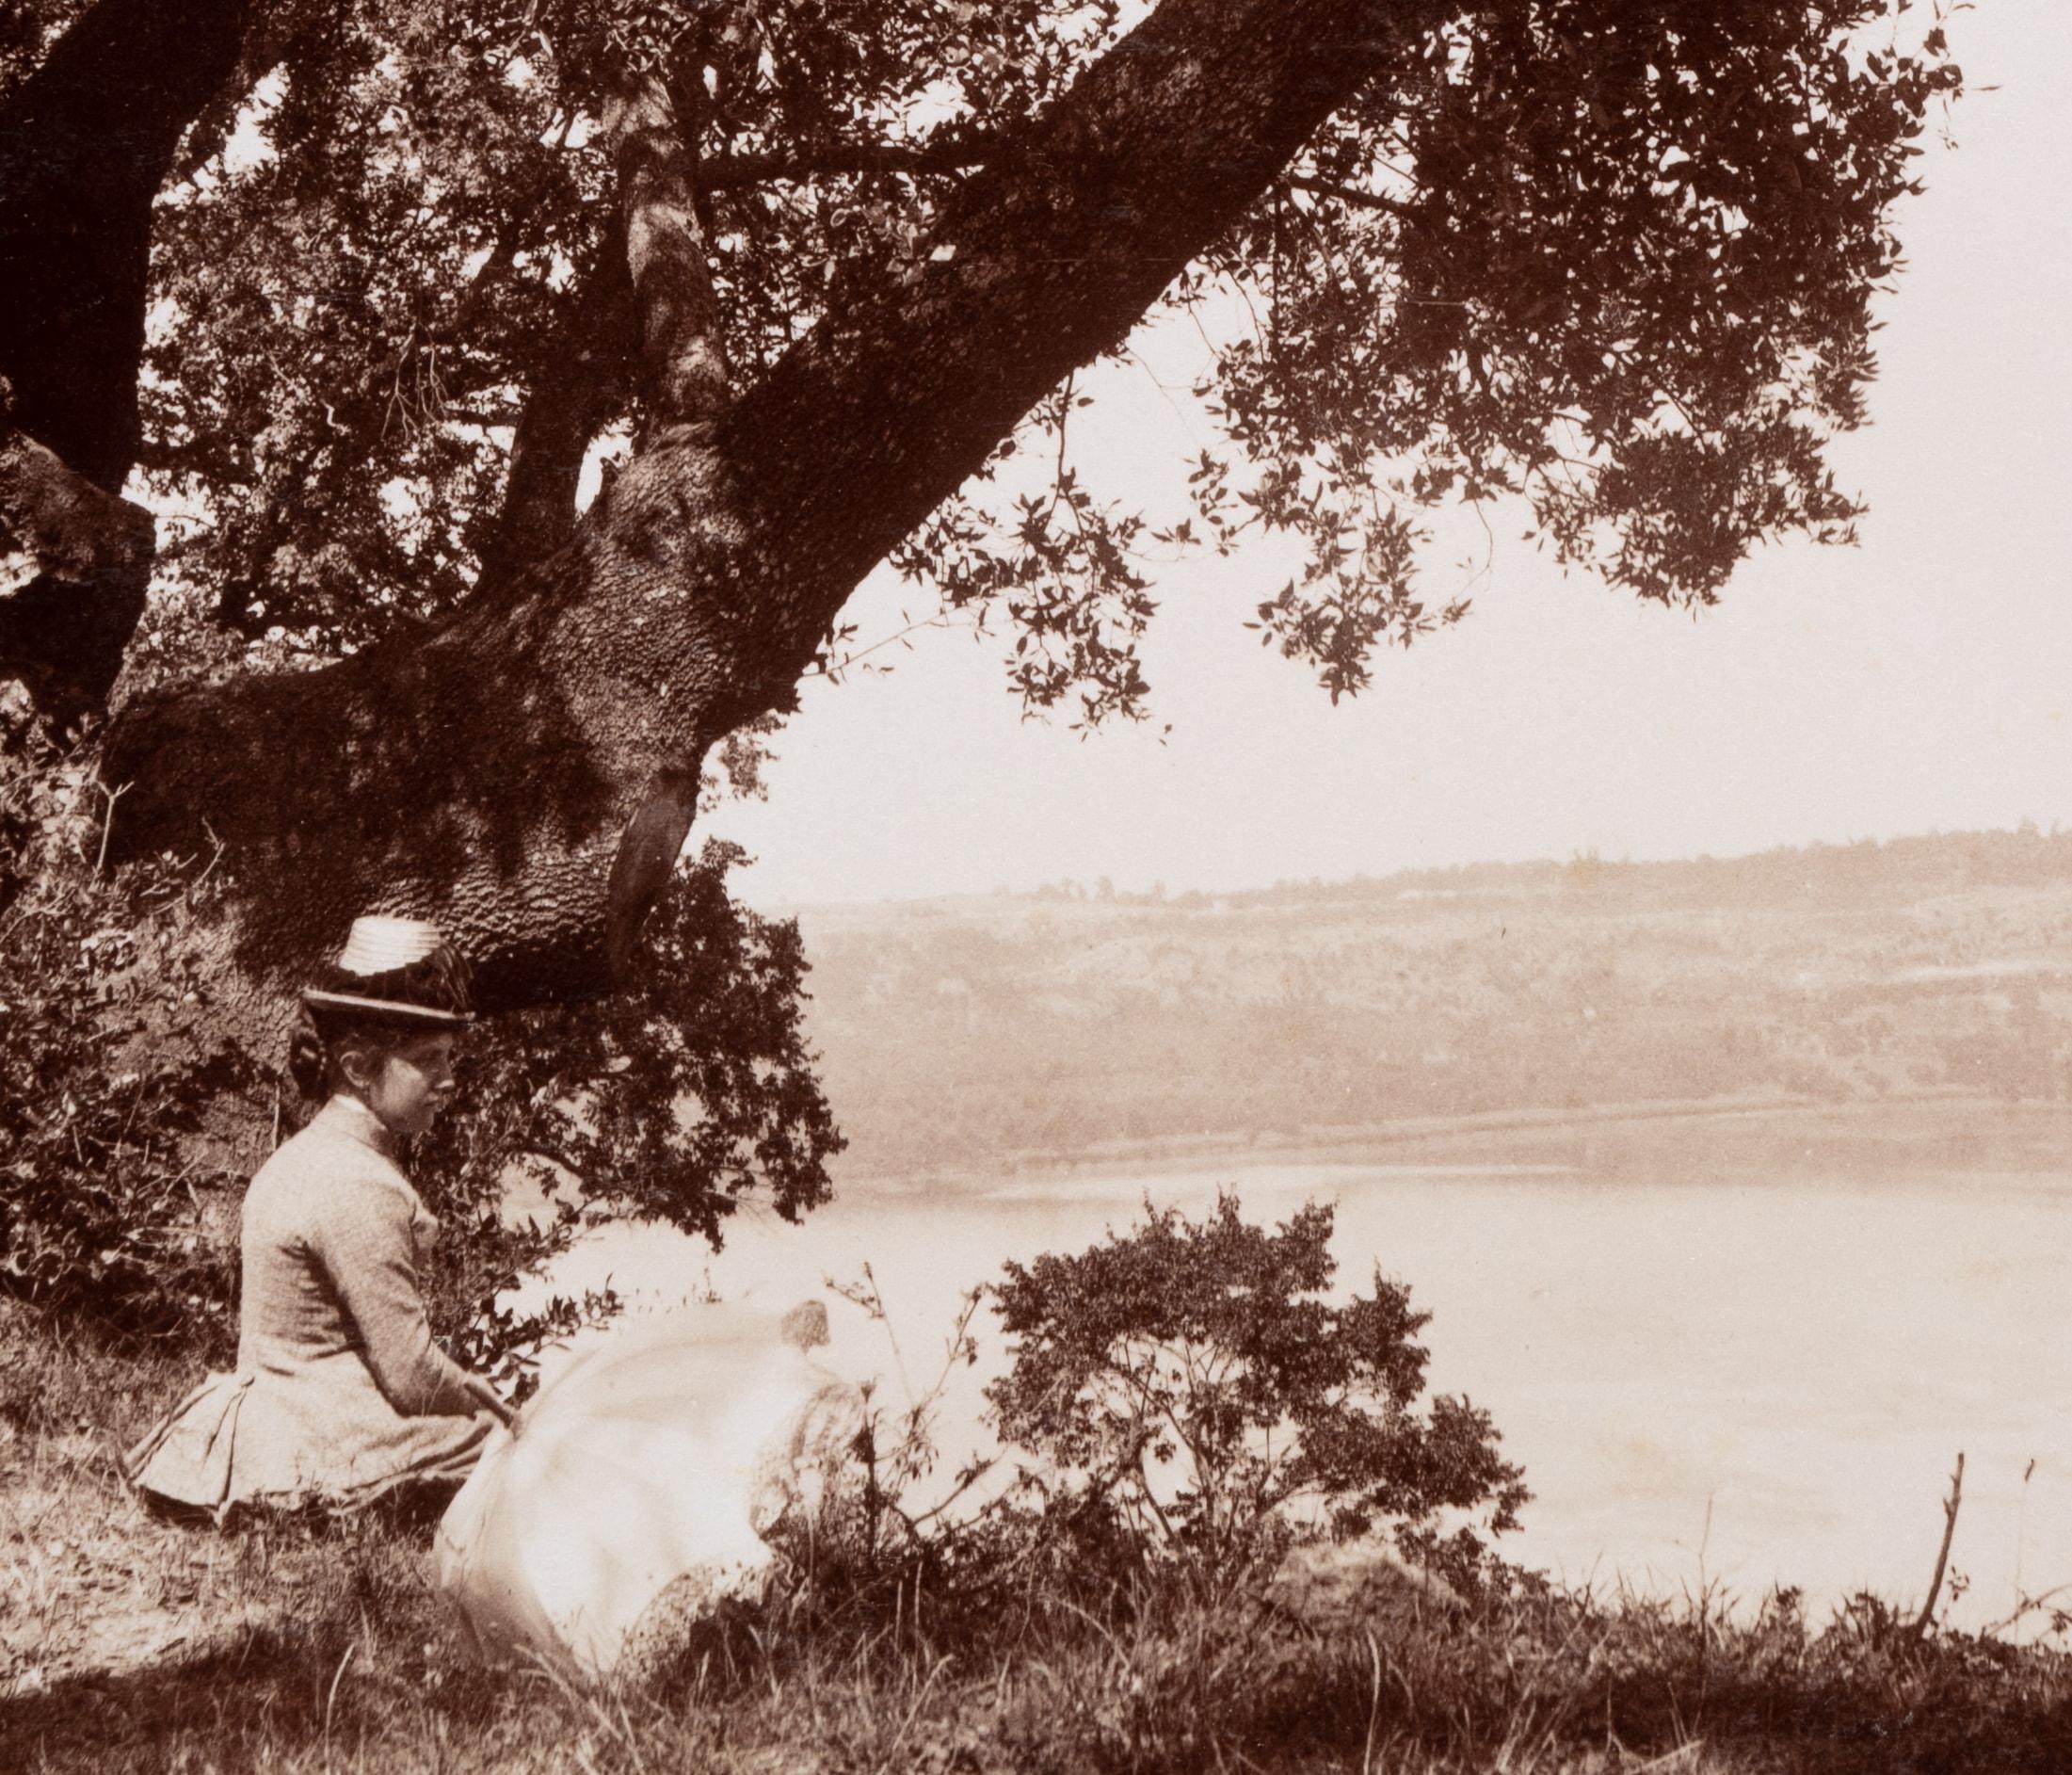 Domenico Anderson (1854 Rom - 1938 ibid.) : Vue sur le lac d'Albano avec une femme avec un parasol se reposant en regardant le lac, c. 1880, épreuve sur papier albuminé

Technique : impression sur papier albuminé, montée sur carton

Date :